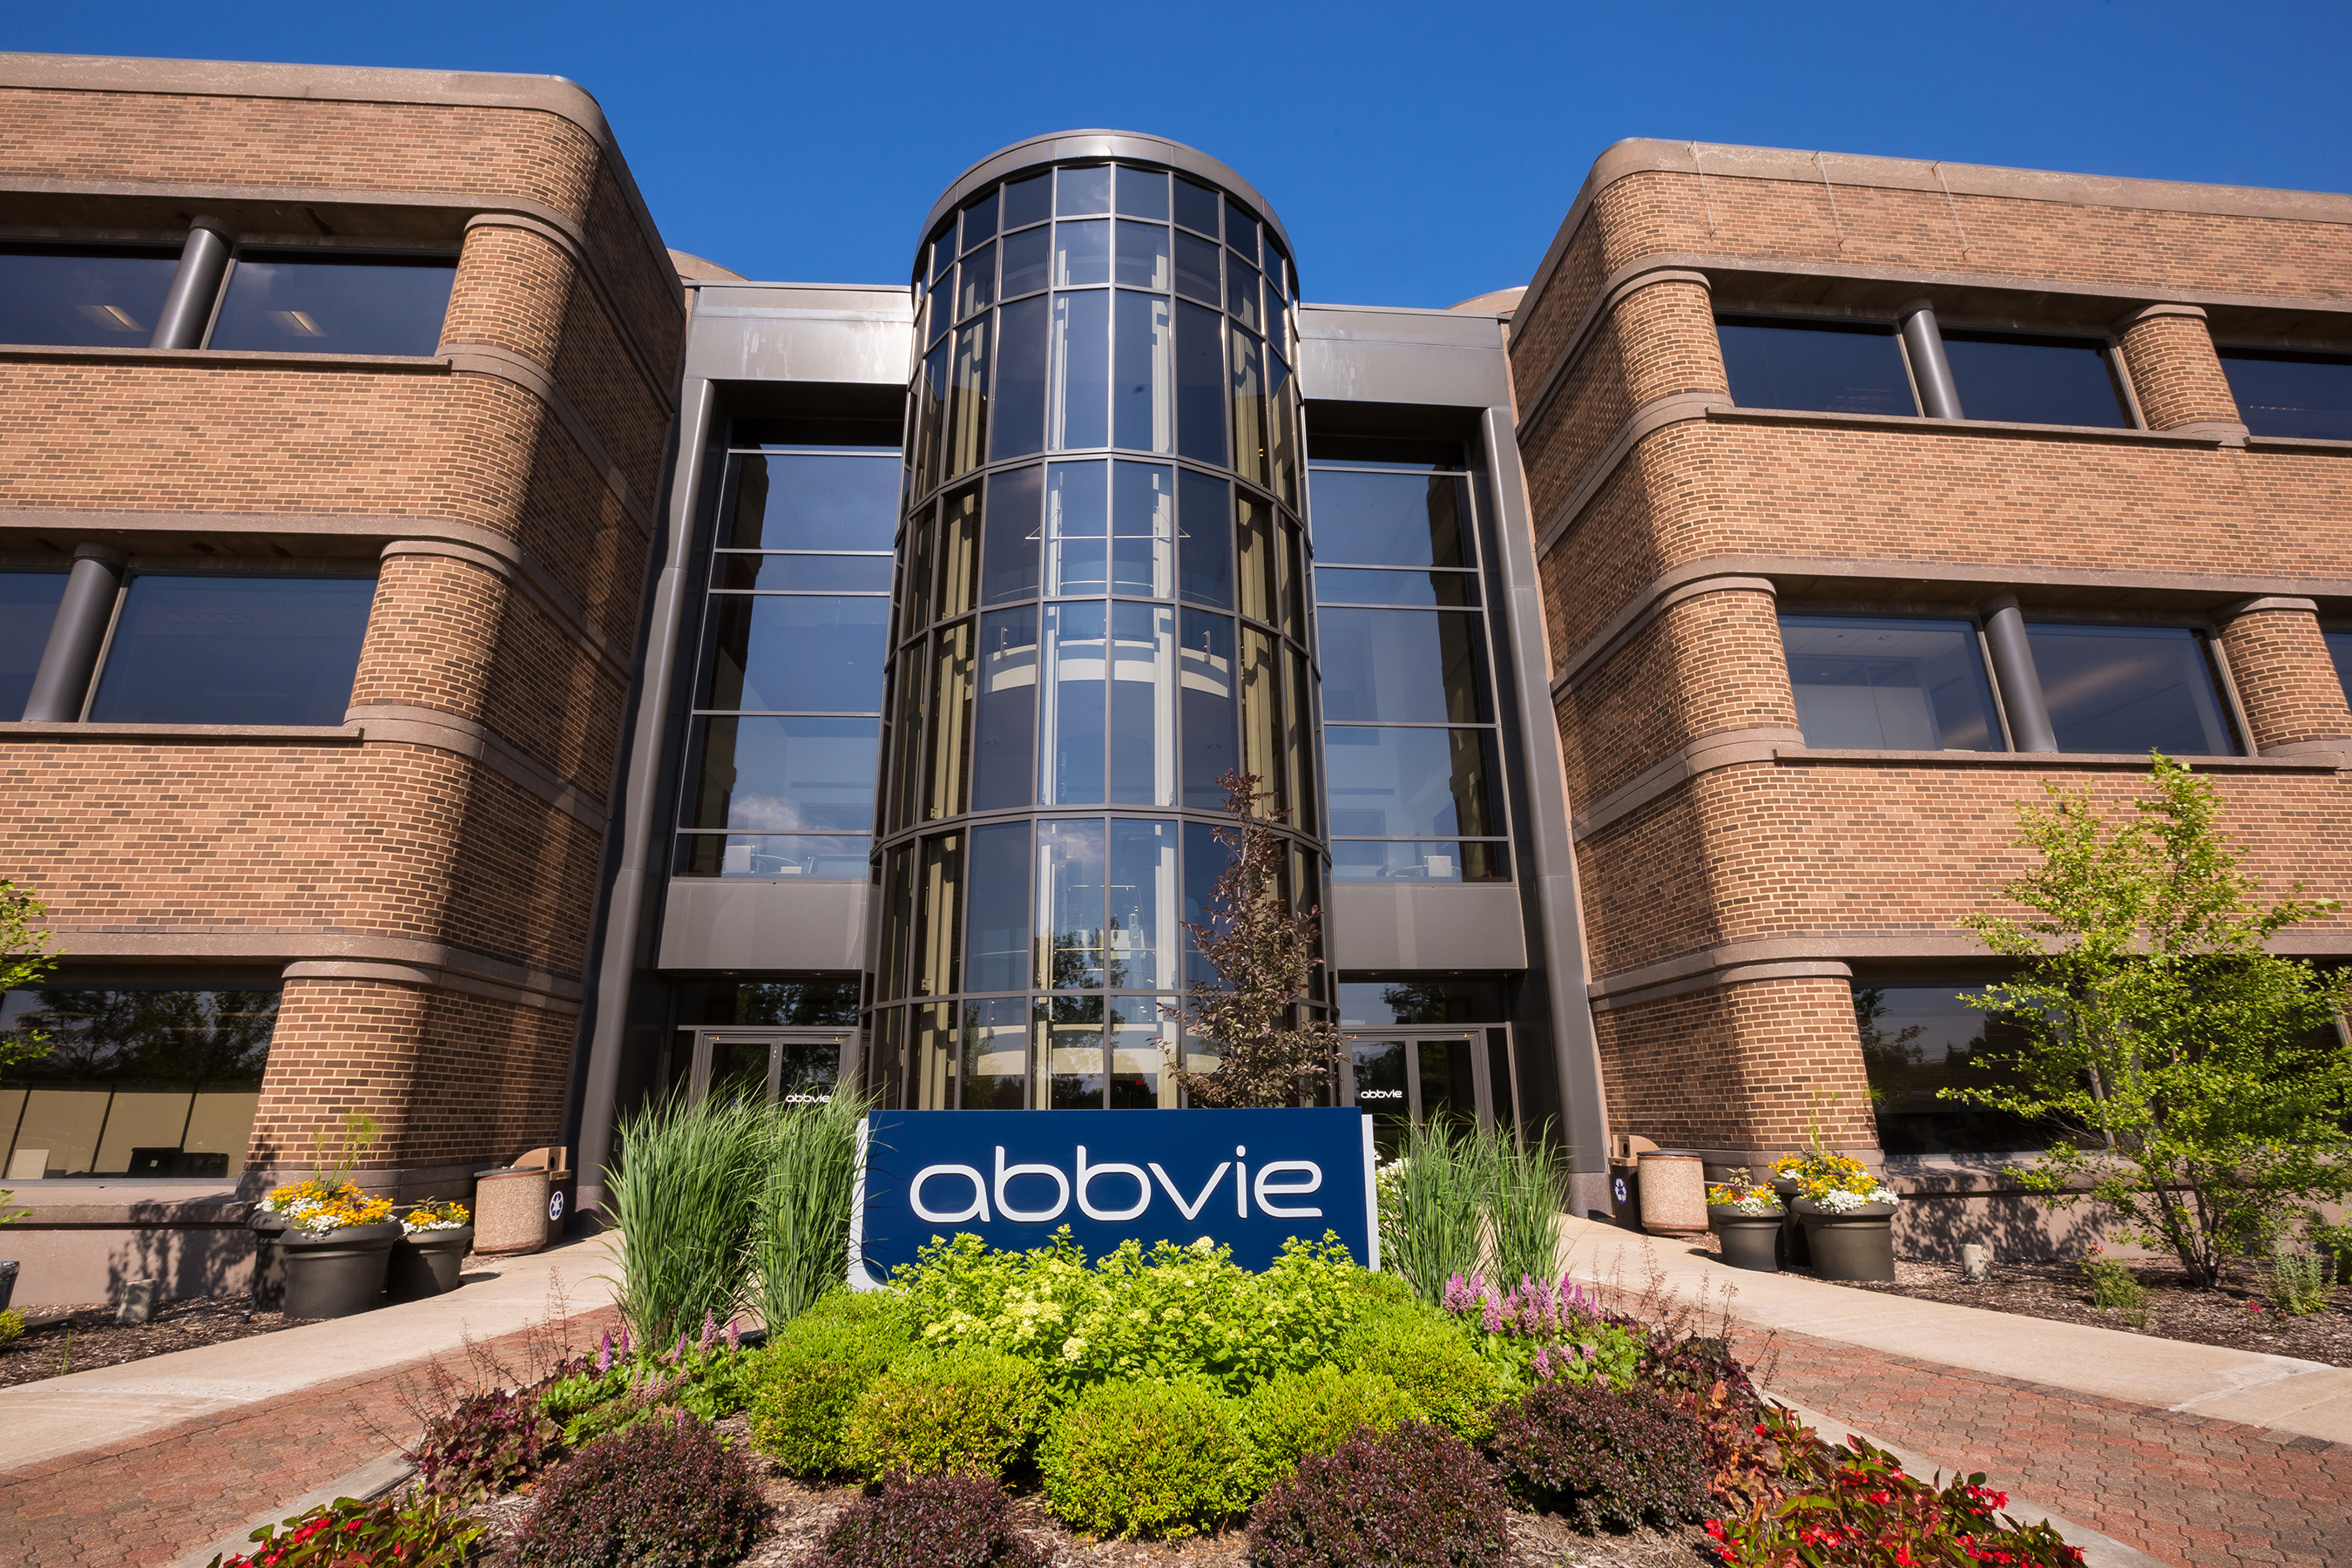 AbbVie Headquarters